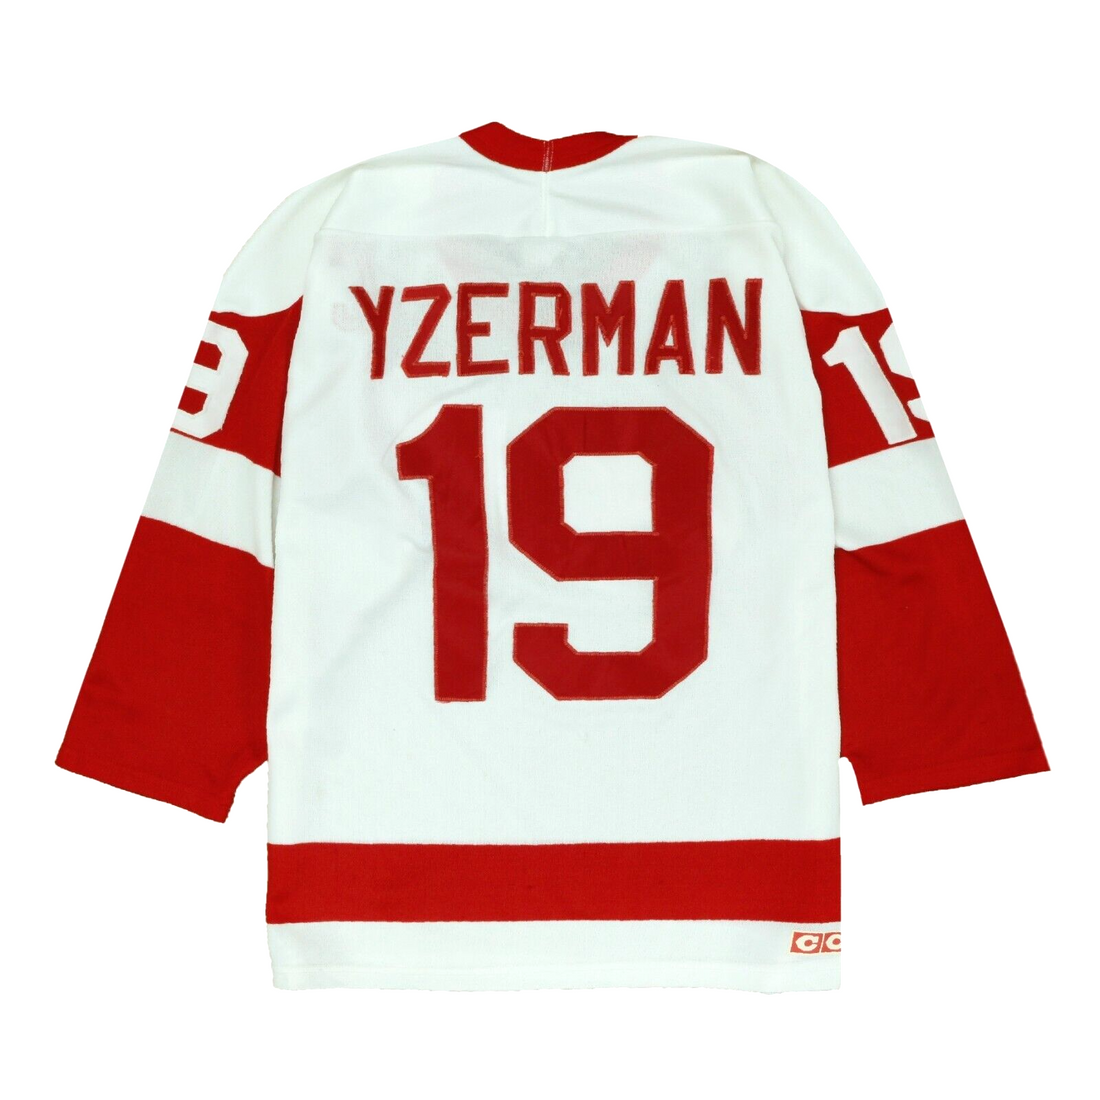 Steve Yzerman Detriot Red Wings Vintage Throwback Jersey